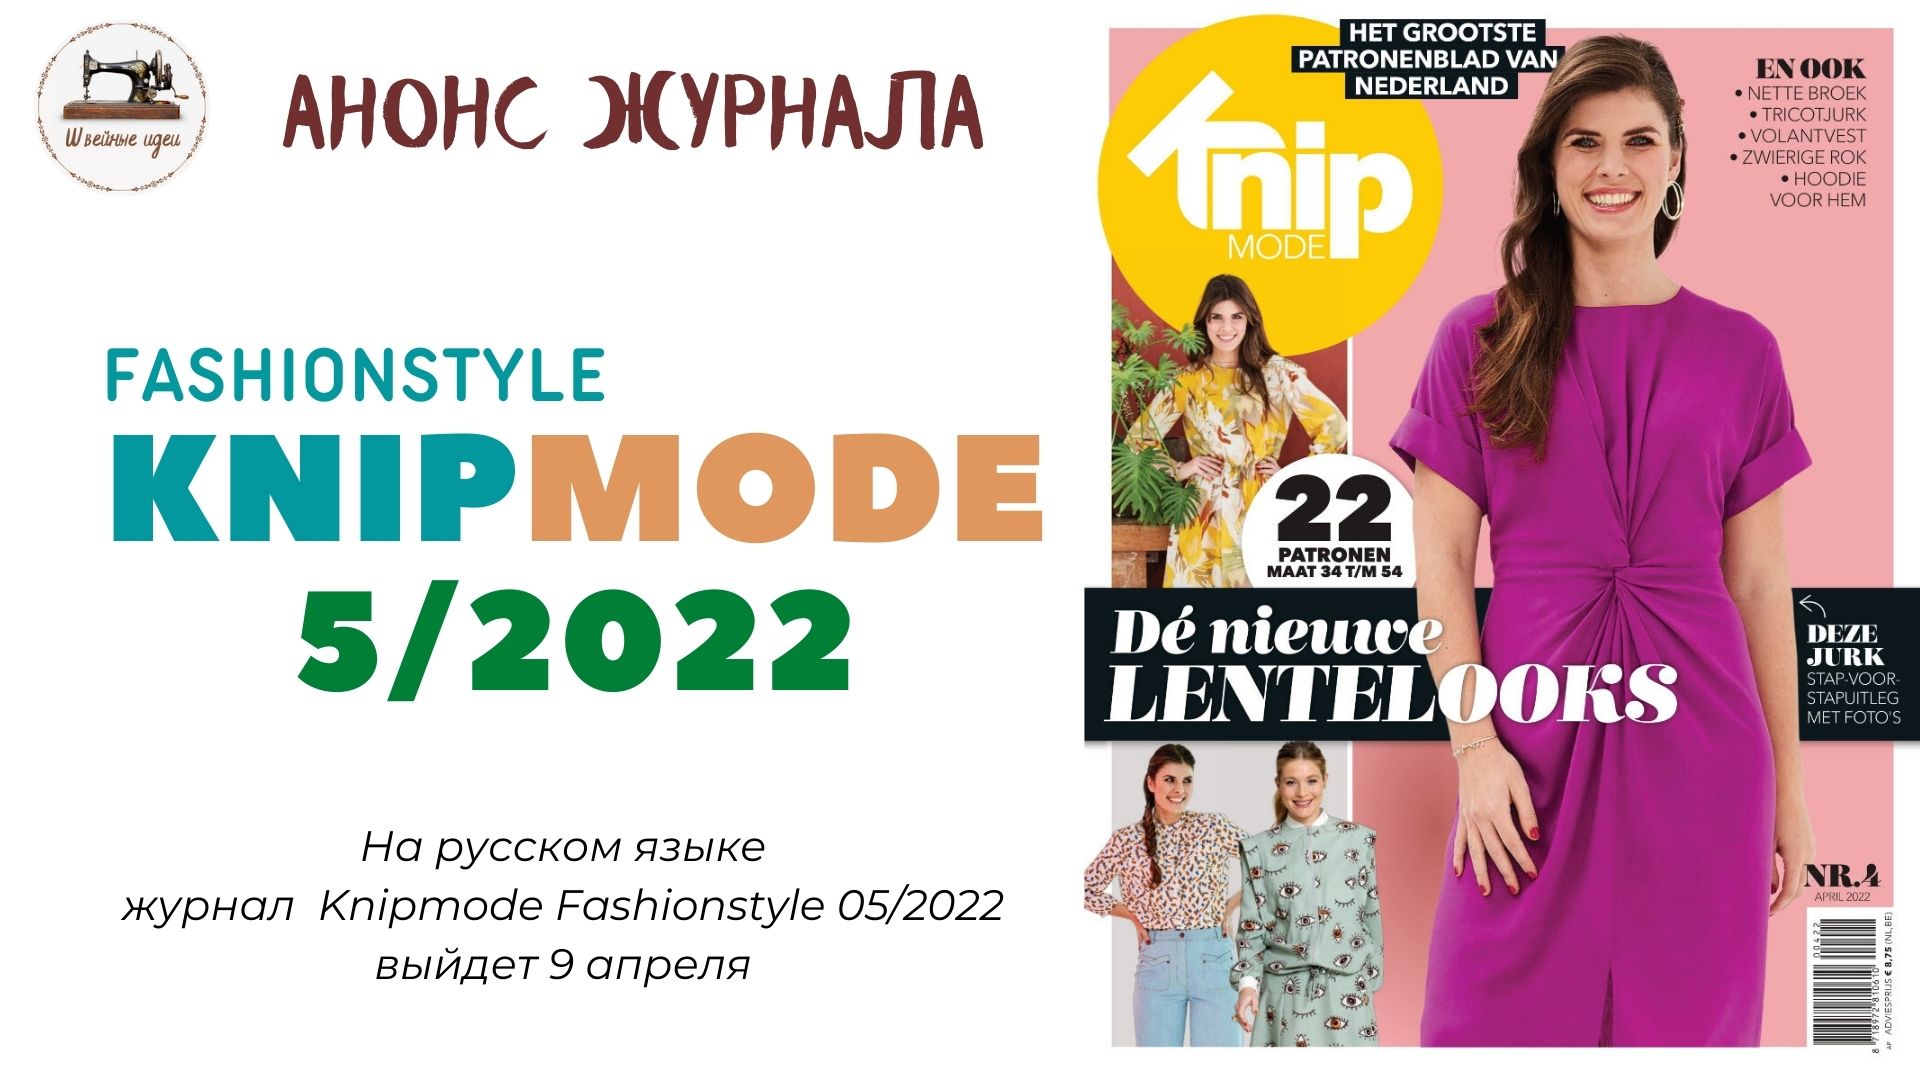 Knipmode на русском 5/2022. Страницы журнала оживают. Полюбуемся на модели одежды в движении